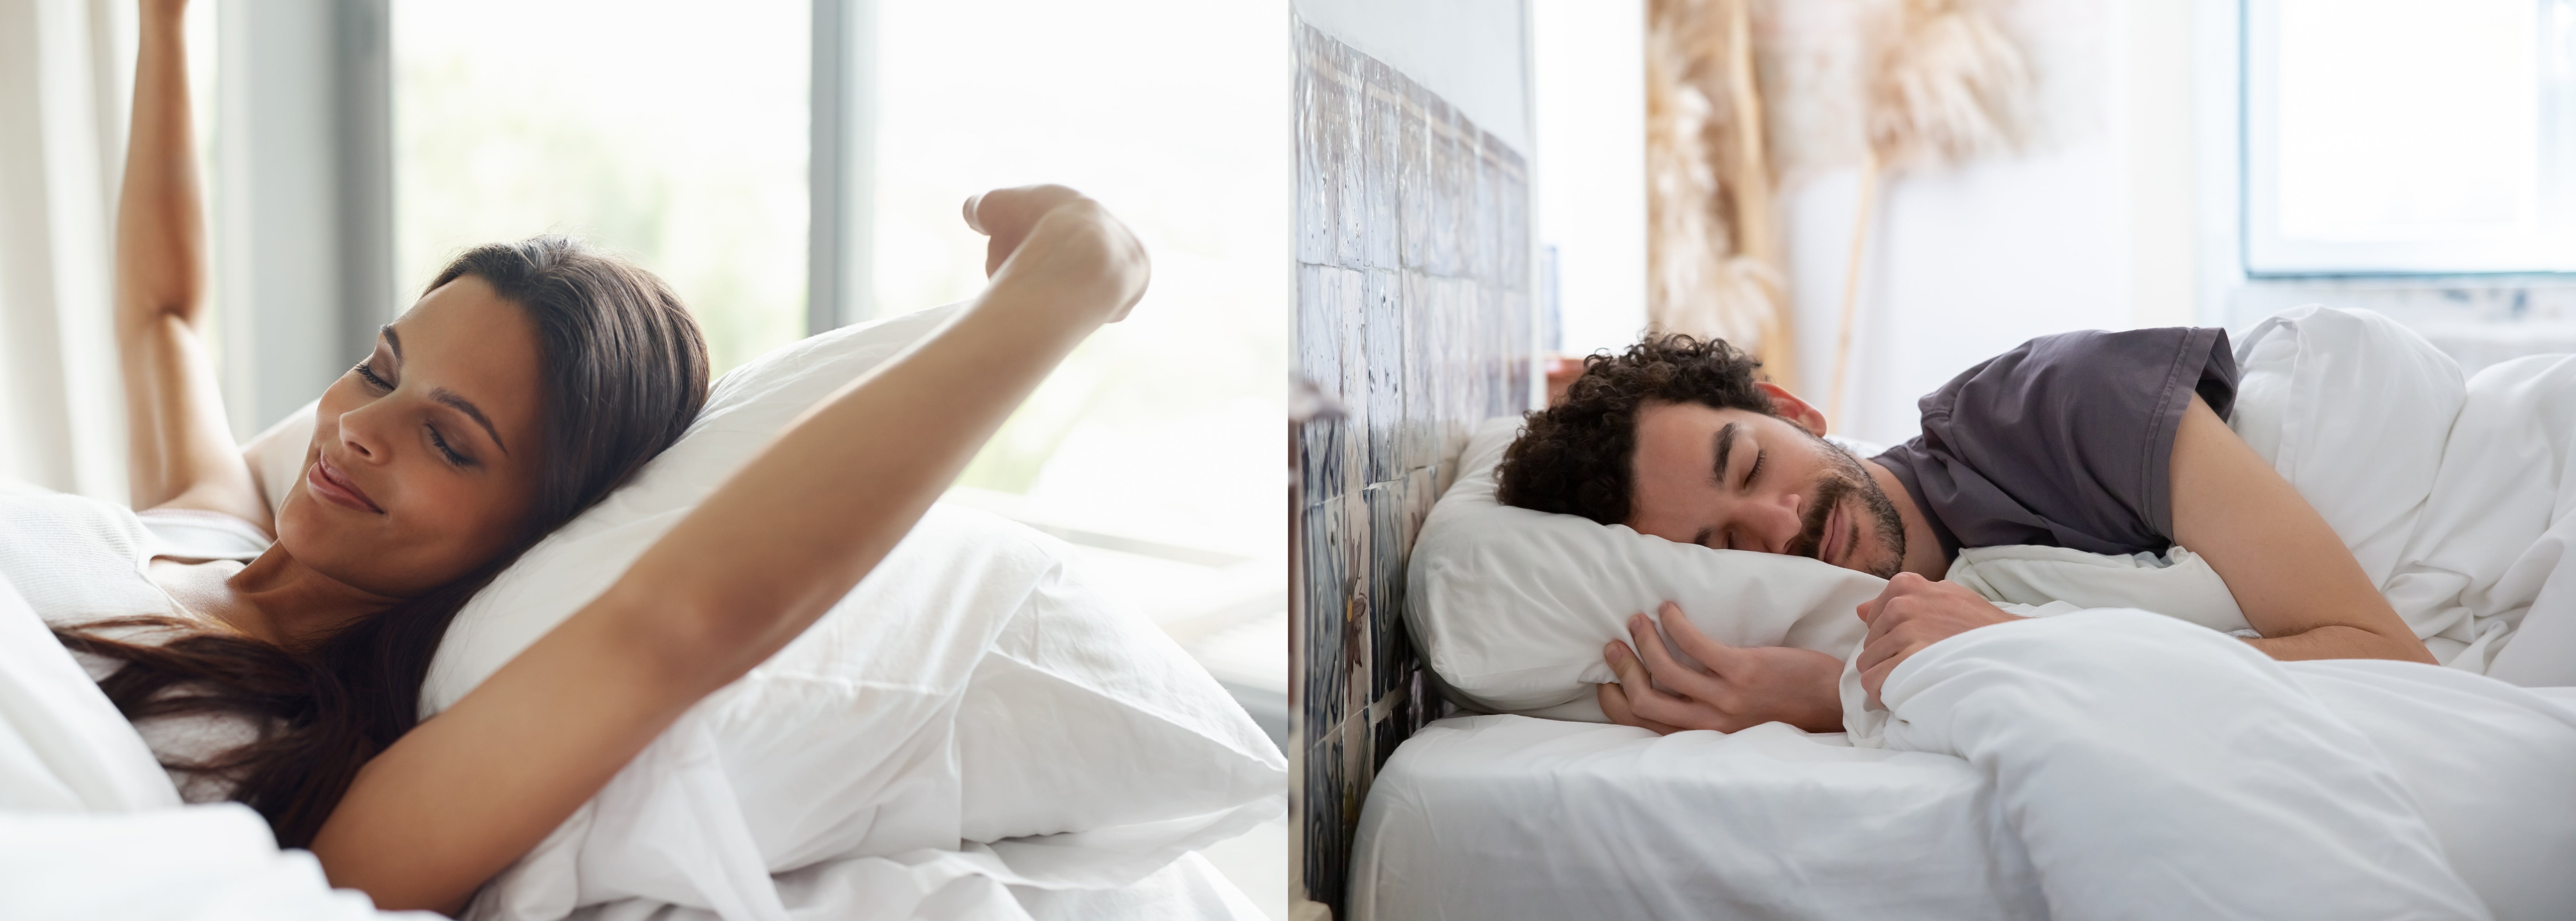 Frau und Mann wachen erholt und entspannt auf; CBD-Öl gegen Schlafstörungen und Stress